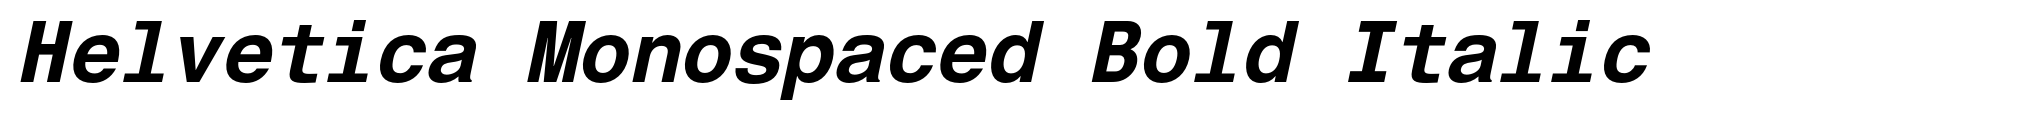 Helvetica Monospaced Bold Italic image